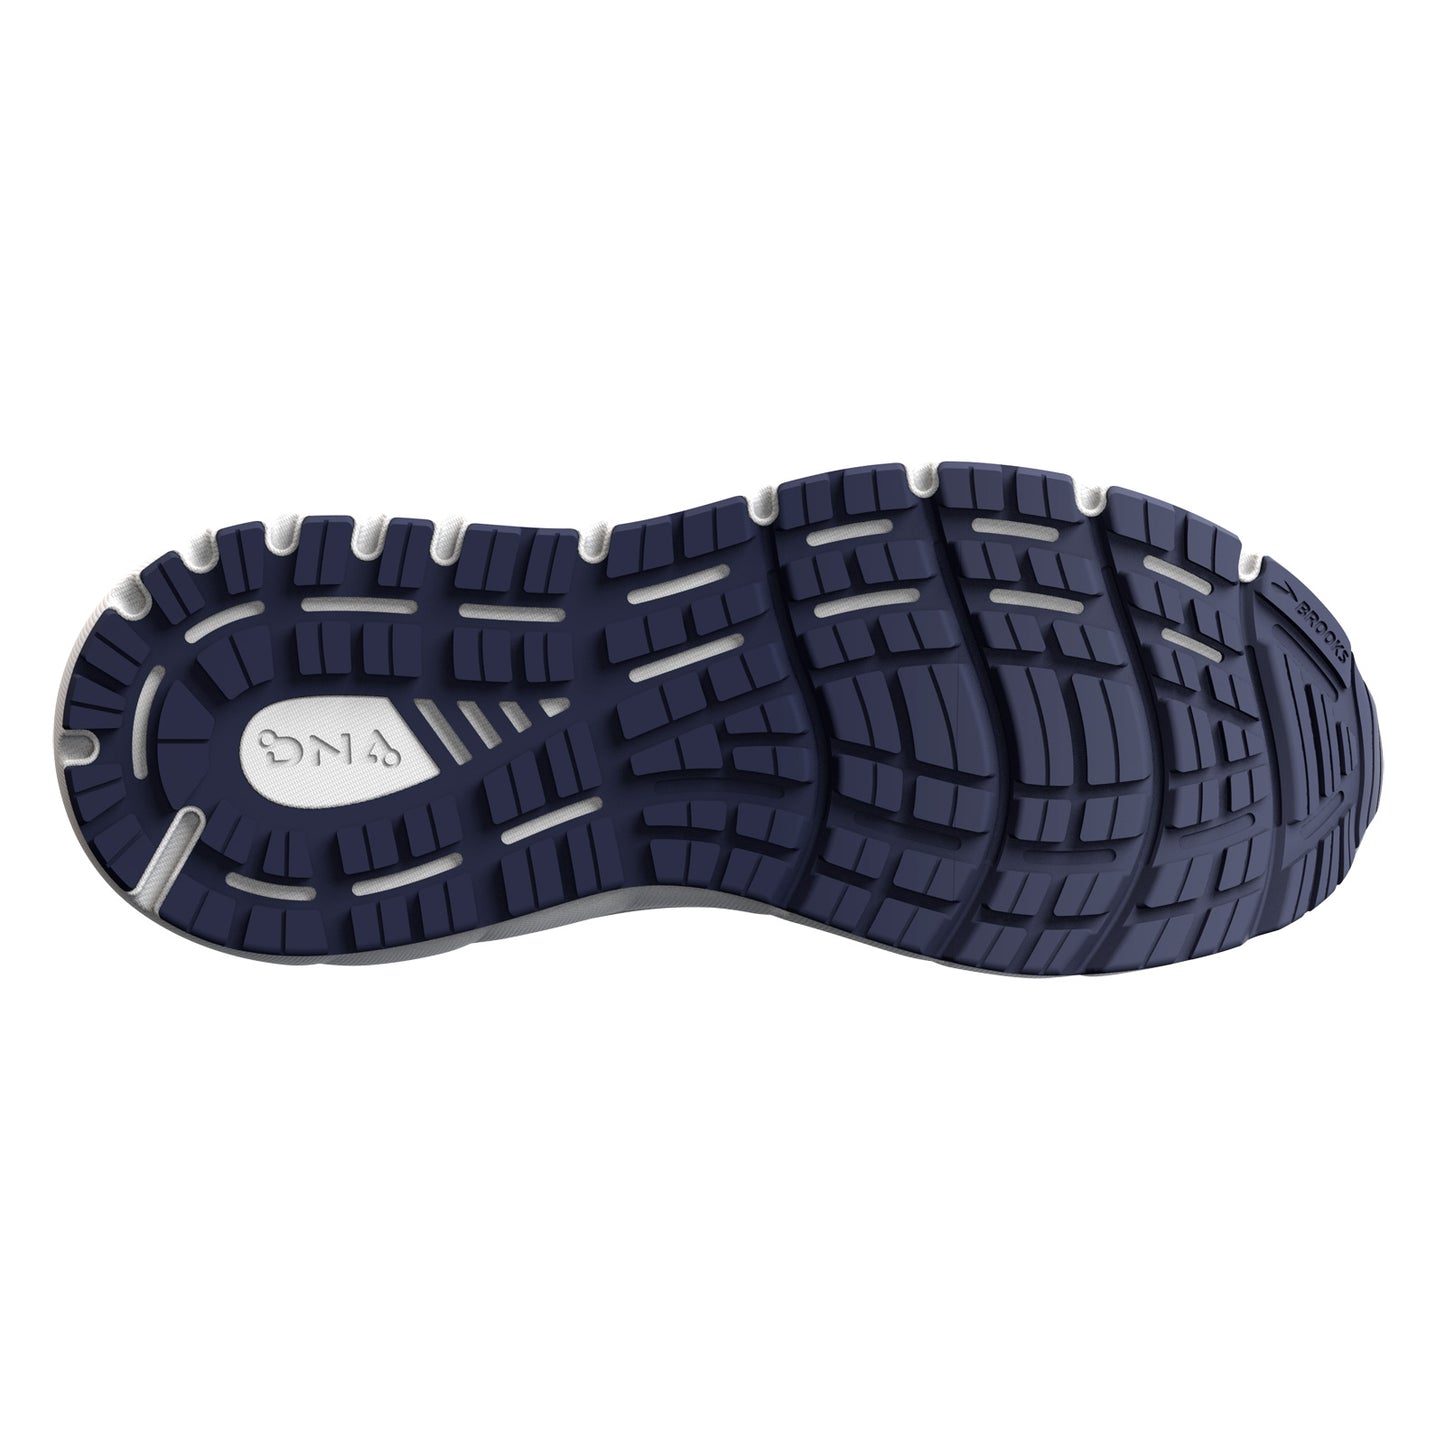 Peltz Shoes  Women's Brooks Addiction GTS 15 Running Shoe - Extra Wide Width Oyster/Rose 120352 2E 054